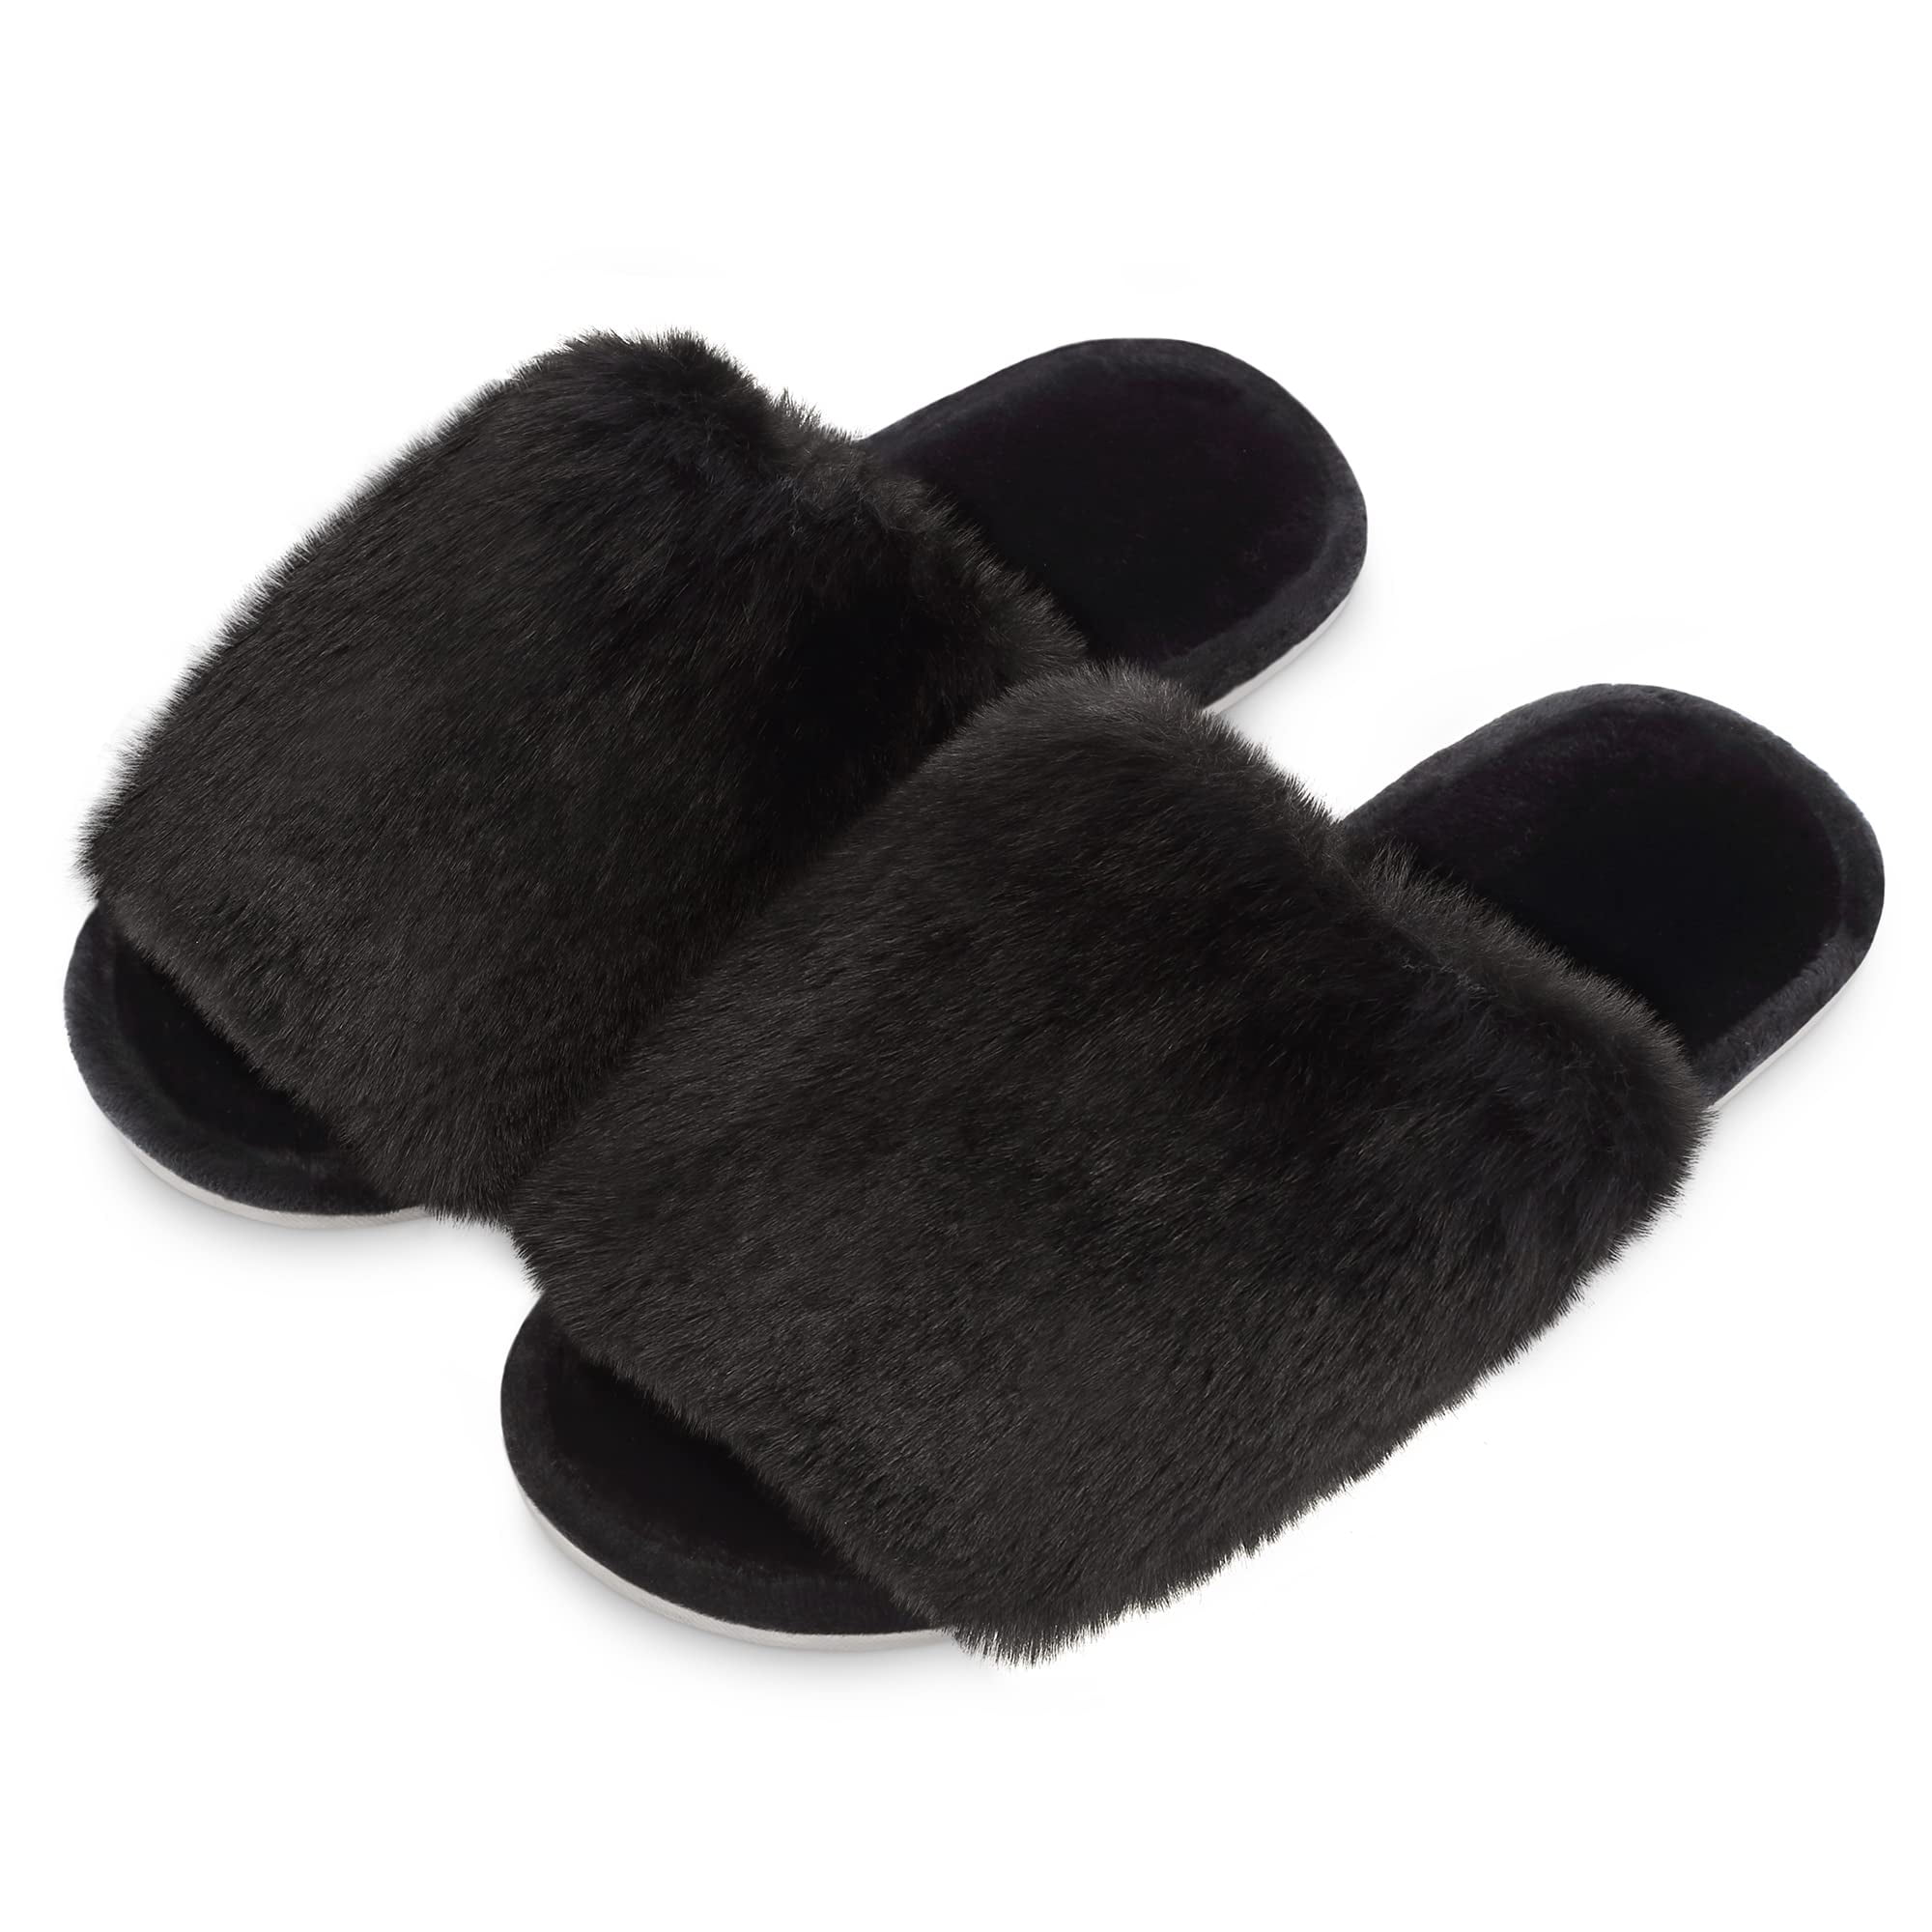 OHS Faux Fur Strap Back Platform Slippers, Black - Large